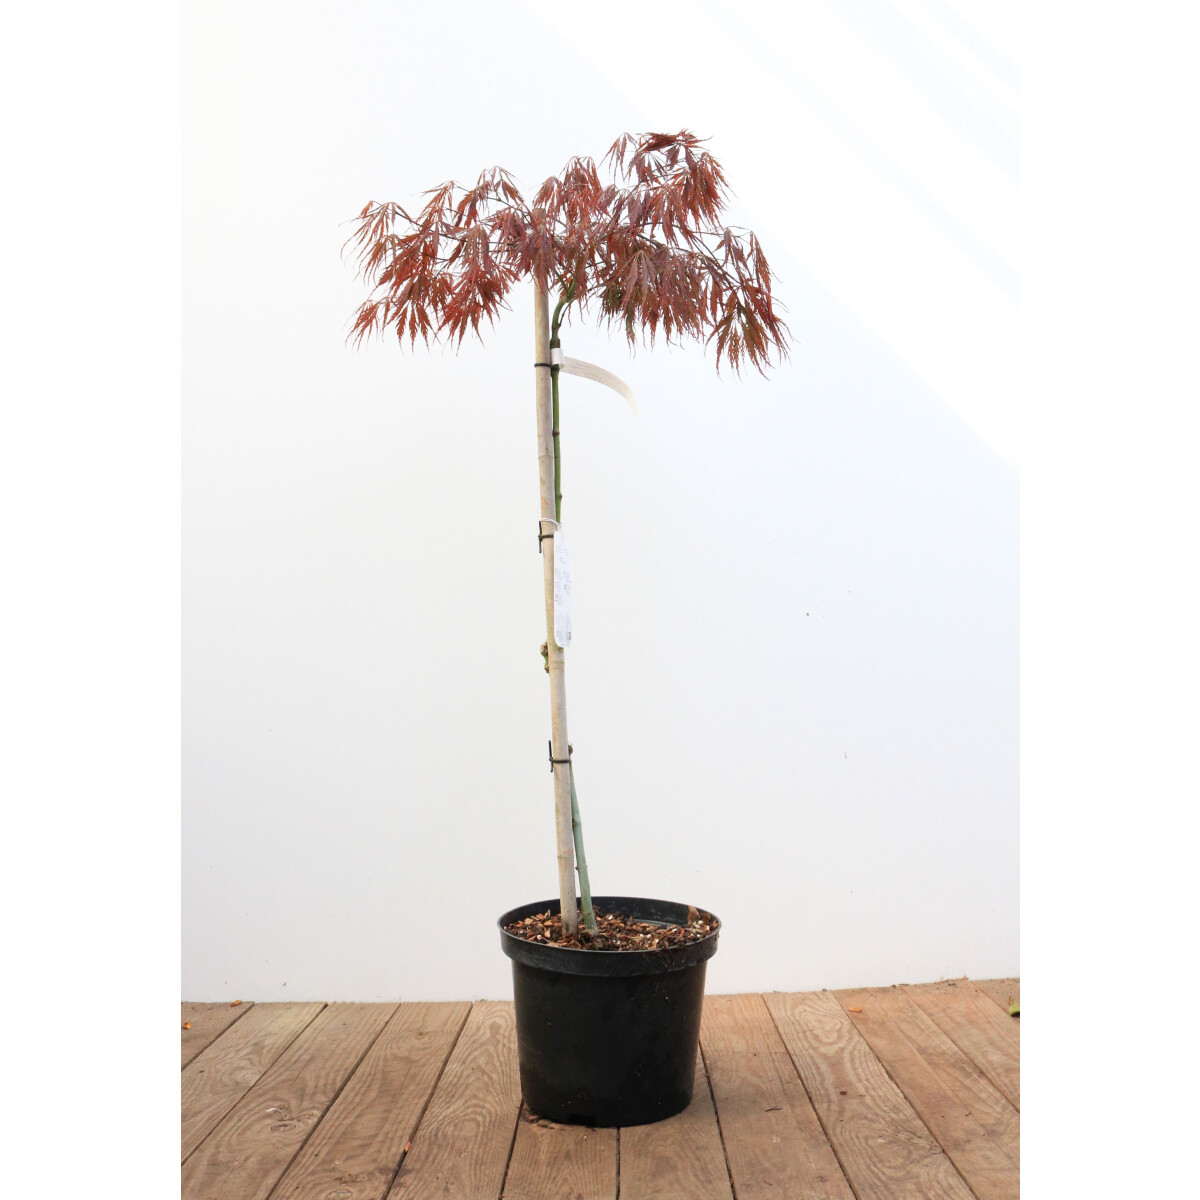 Acer palmatum Dissectum Garnet Stamm Krone Sth. 80-